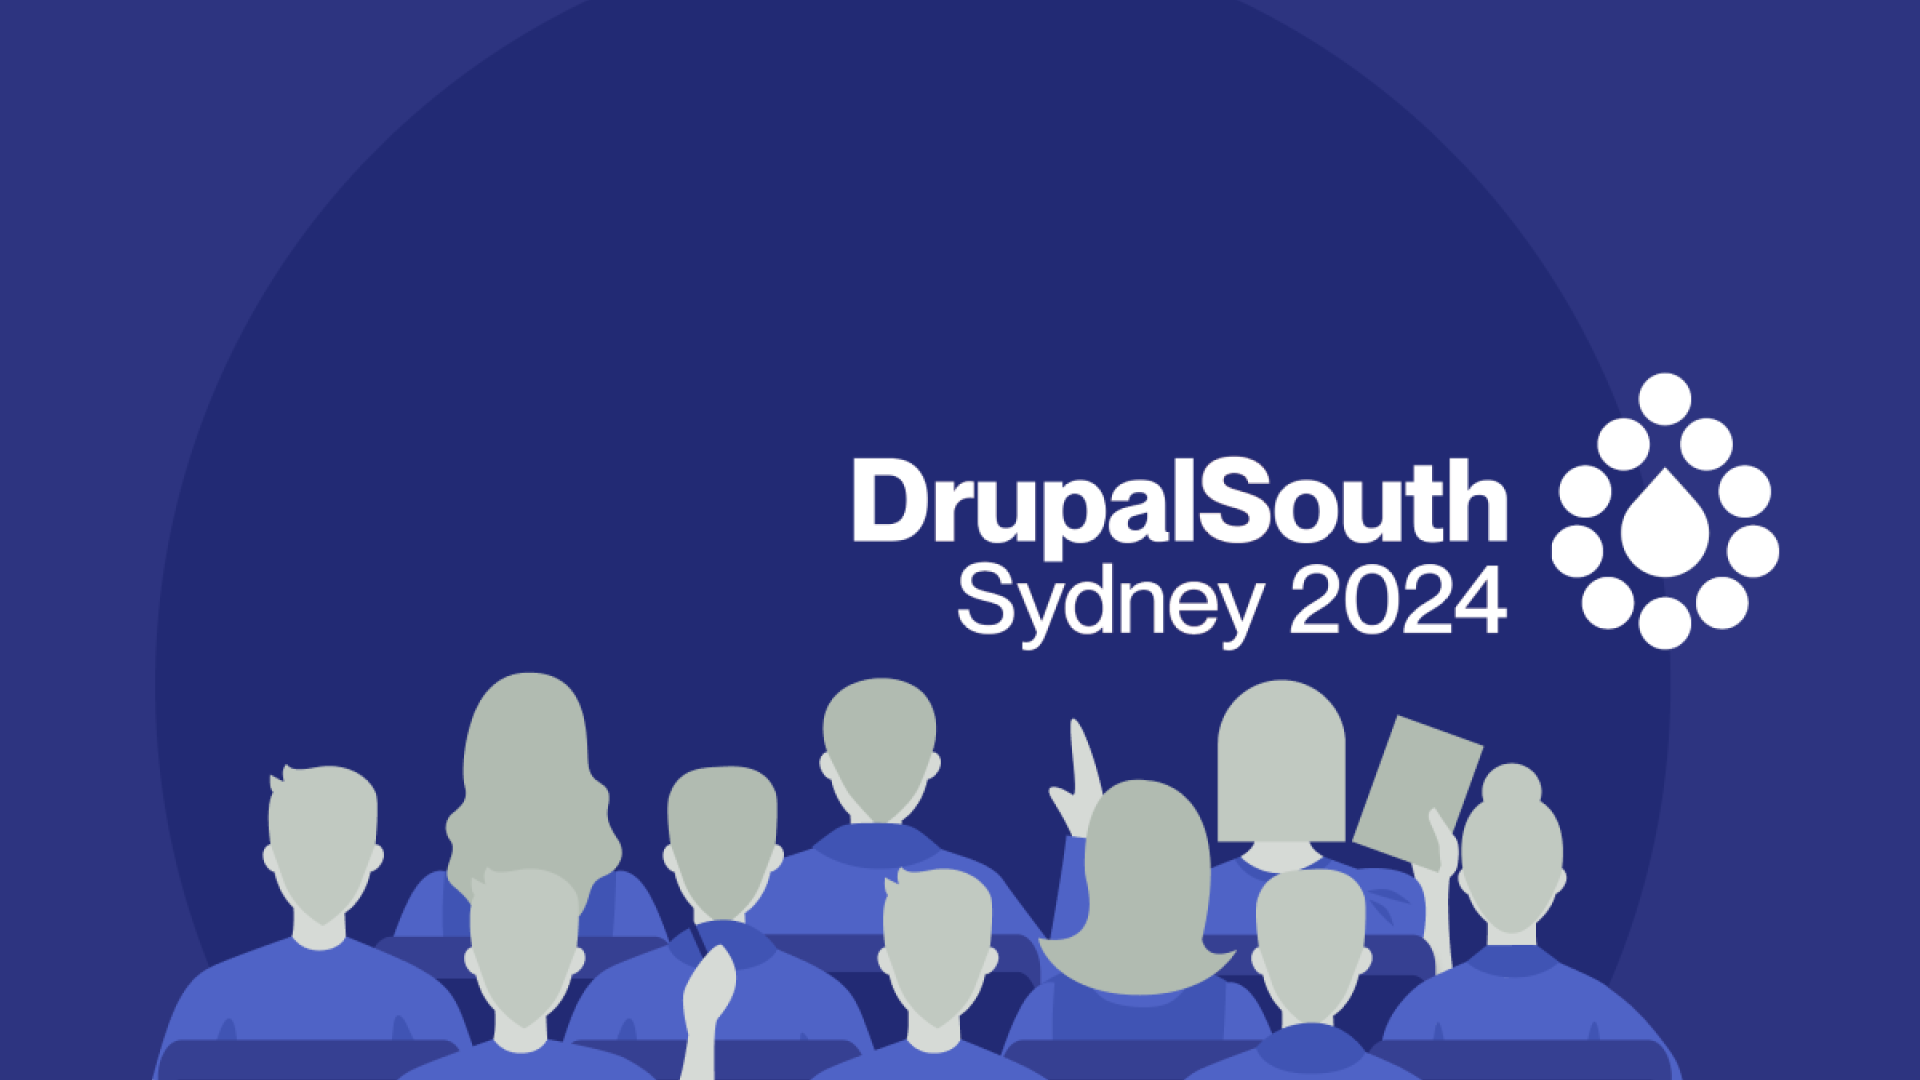 DrupalSouth Sydney 2024